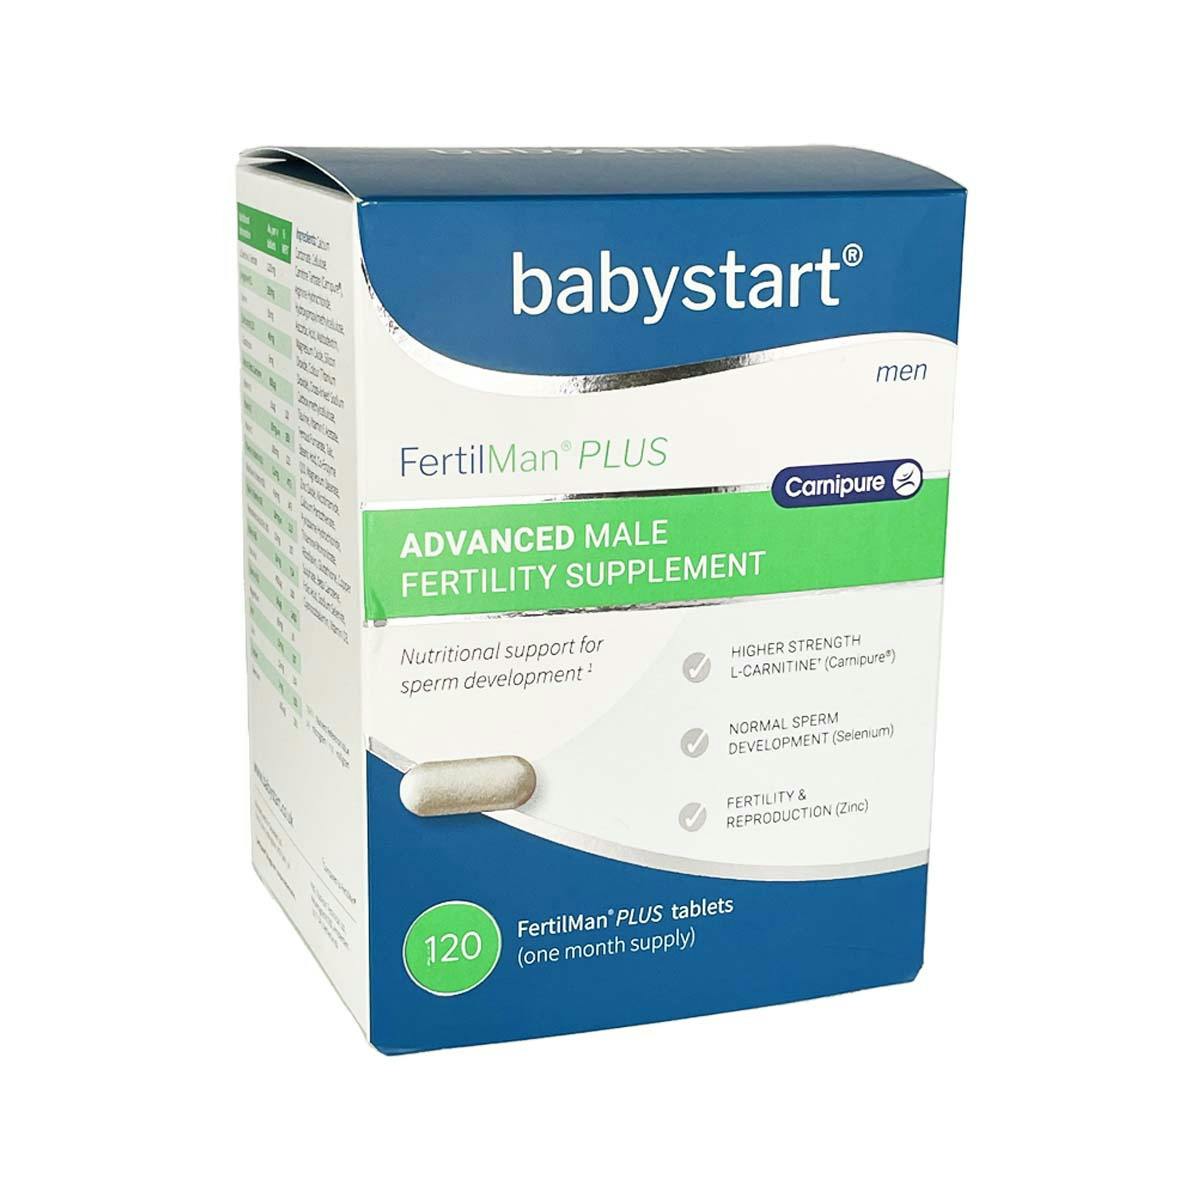 Babystart FertilMan Plus Advanced Male Fertility Supplement - 120 Tablets